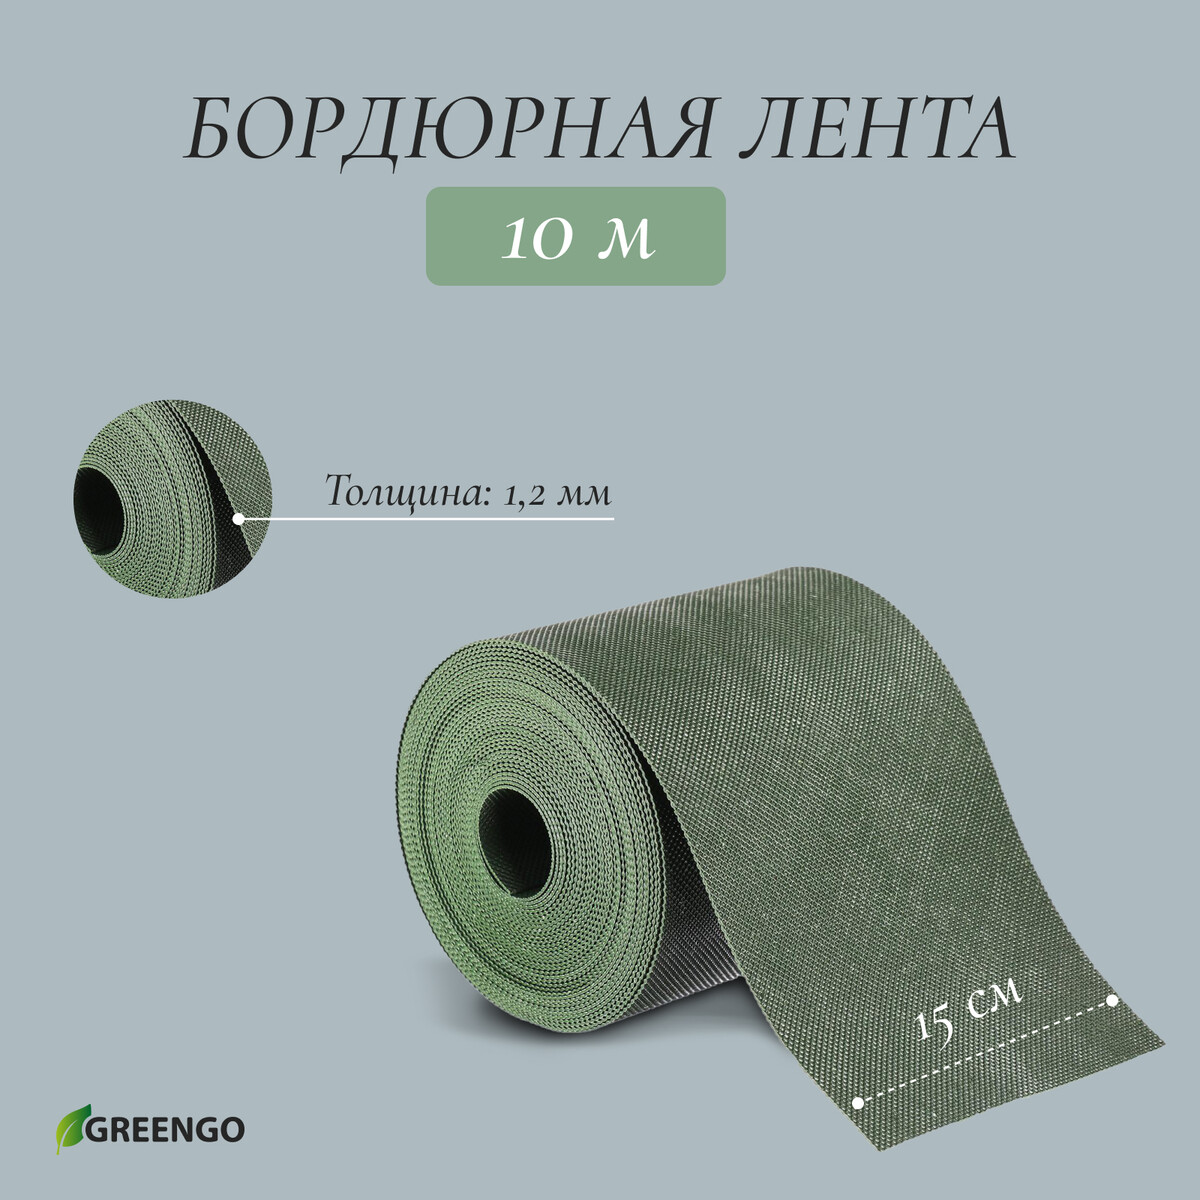 Лента бордюрная, 0.15 × 10 м, толщина 1.2 мм, пластиковая, зеленая, greengo лента бордюрная 0 15 × 9 м толщина 1 2 мм пластиковая фигурная зеленая